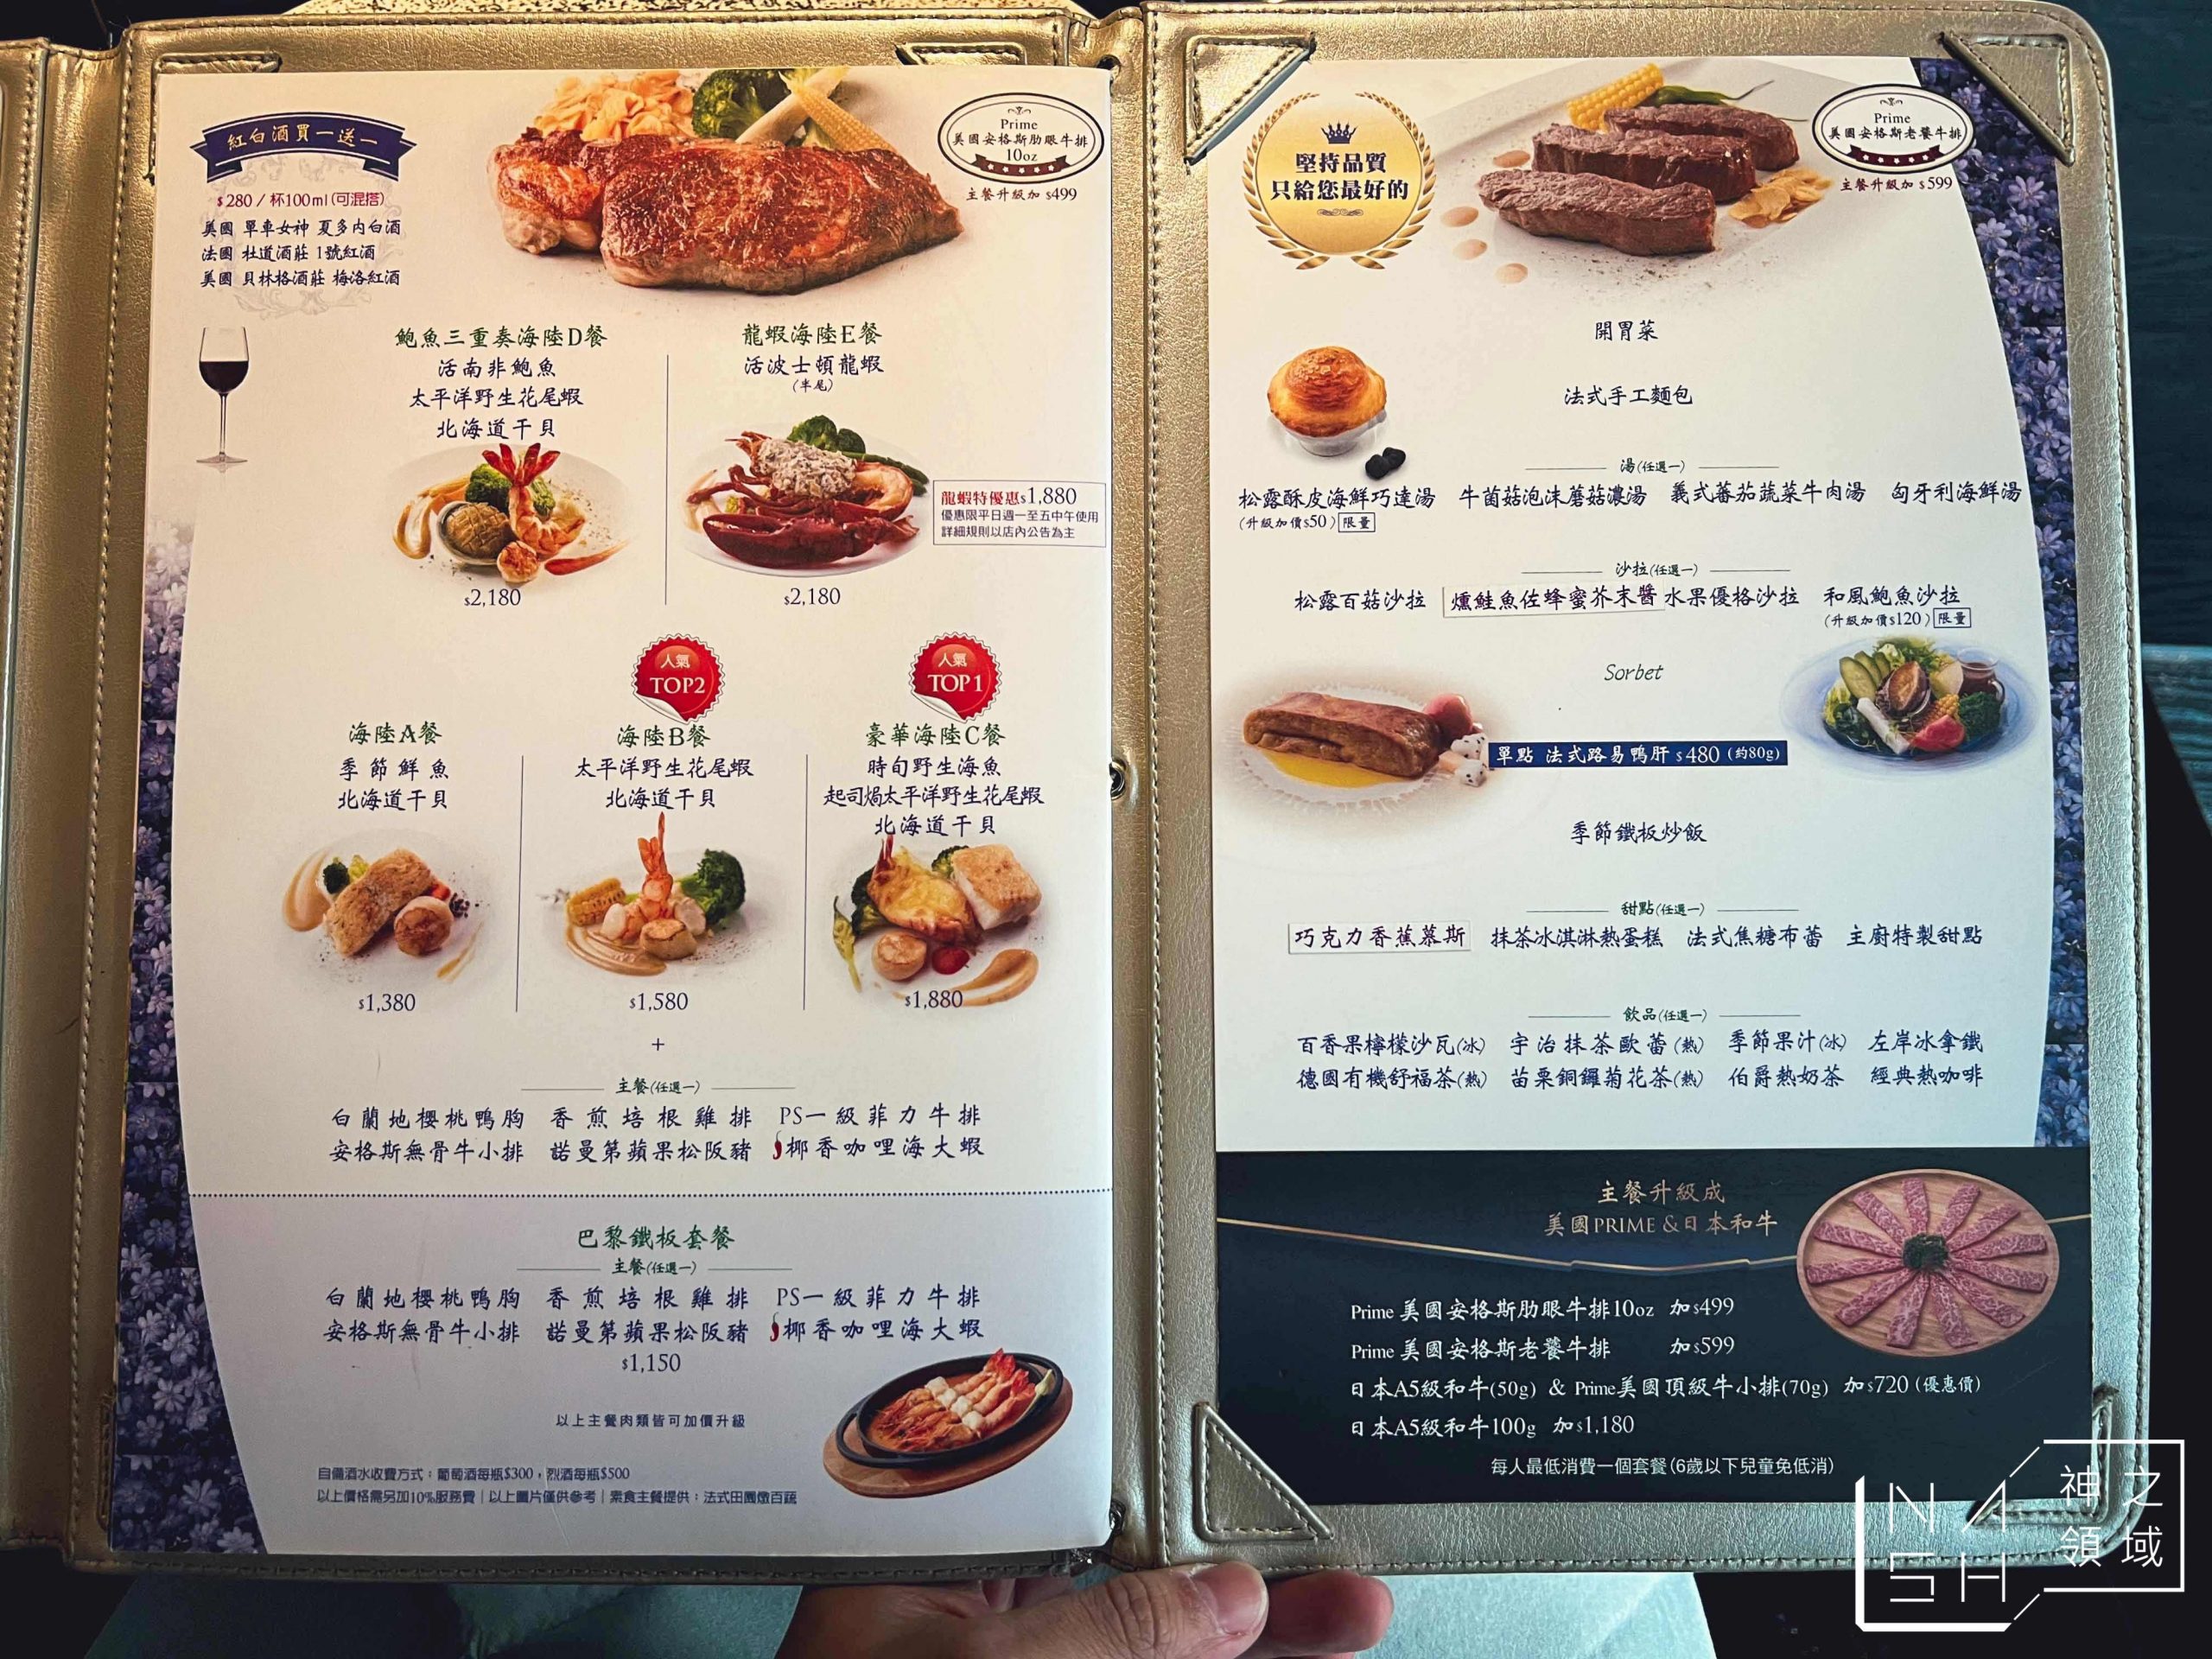 Mosun 墨賞新鐵板料理餐廳